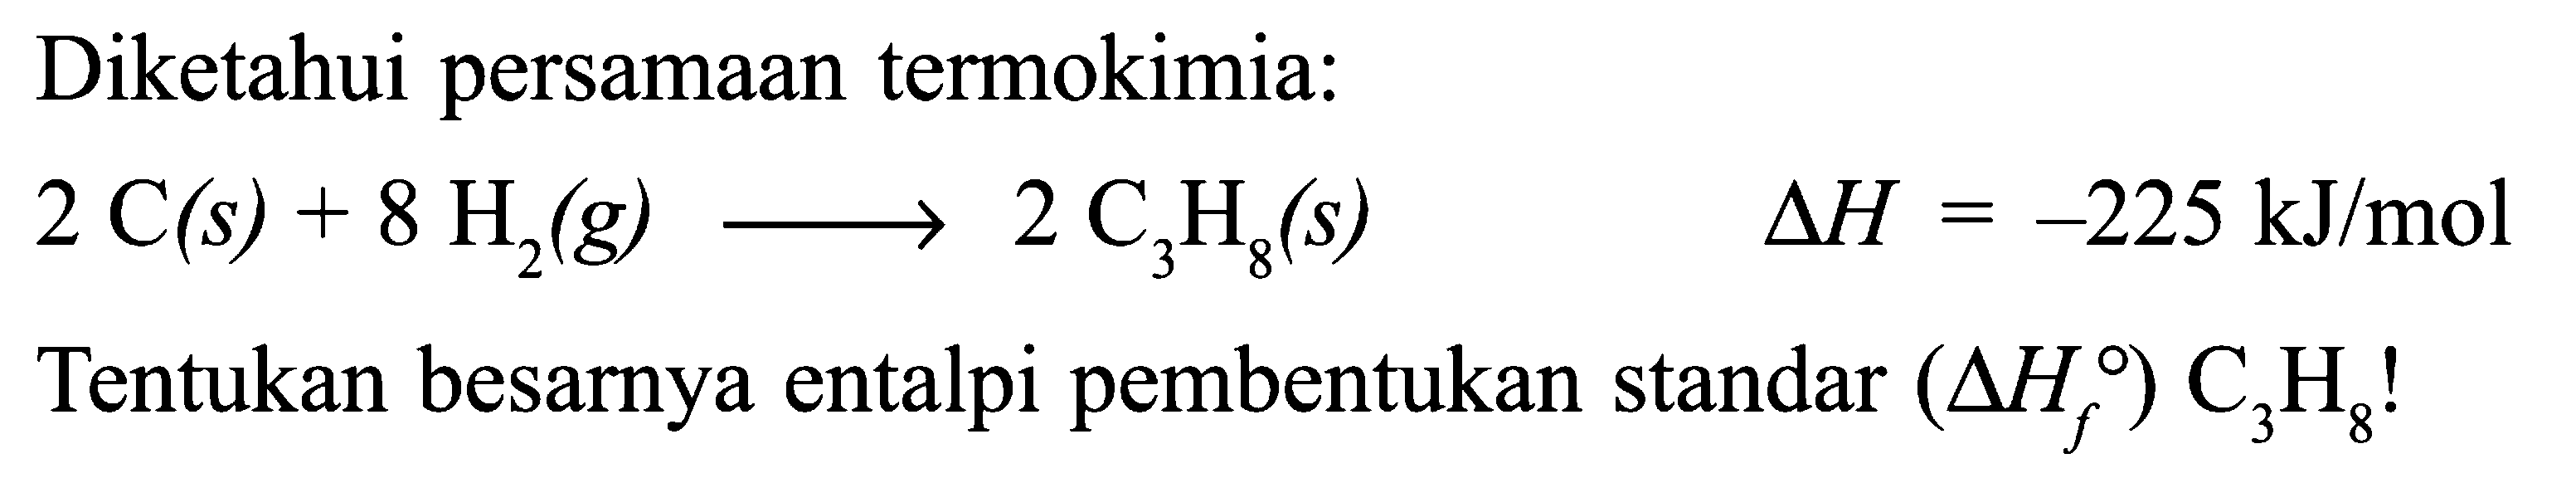 Diketahui persamaan termokimia: 2 C (s) + 8 H2 (g) -> 2 C3H8 (s) delta H = -225 kJ/mol Tentukan besarnya entalpi pembentukan standar (delta Hf) C3H8 !